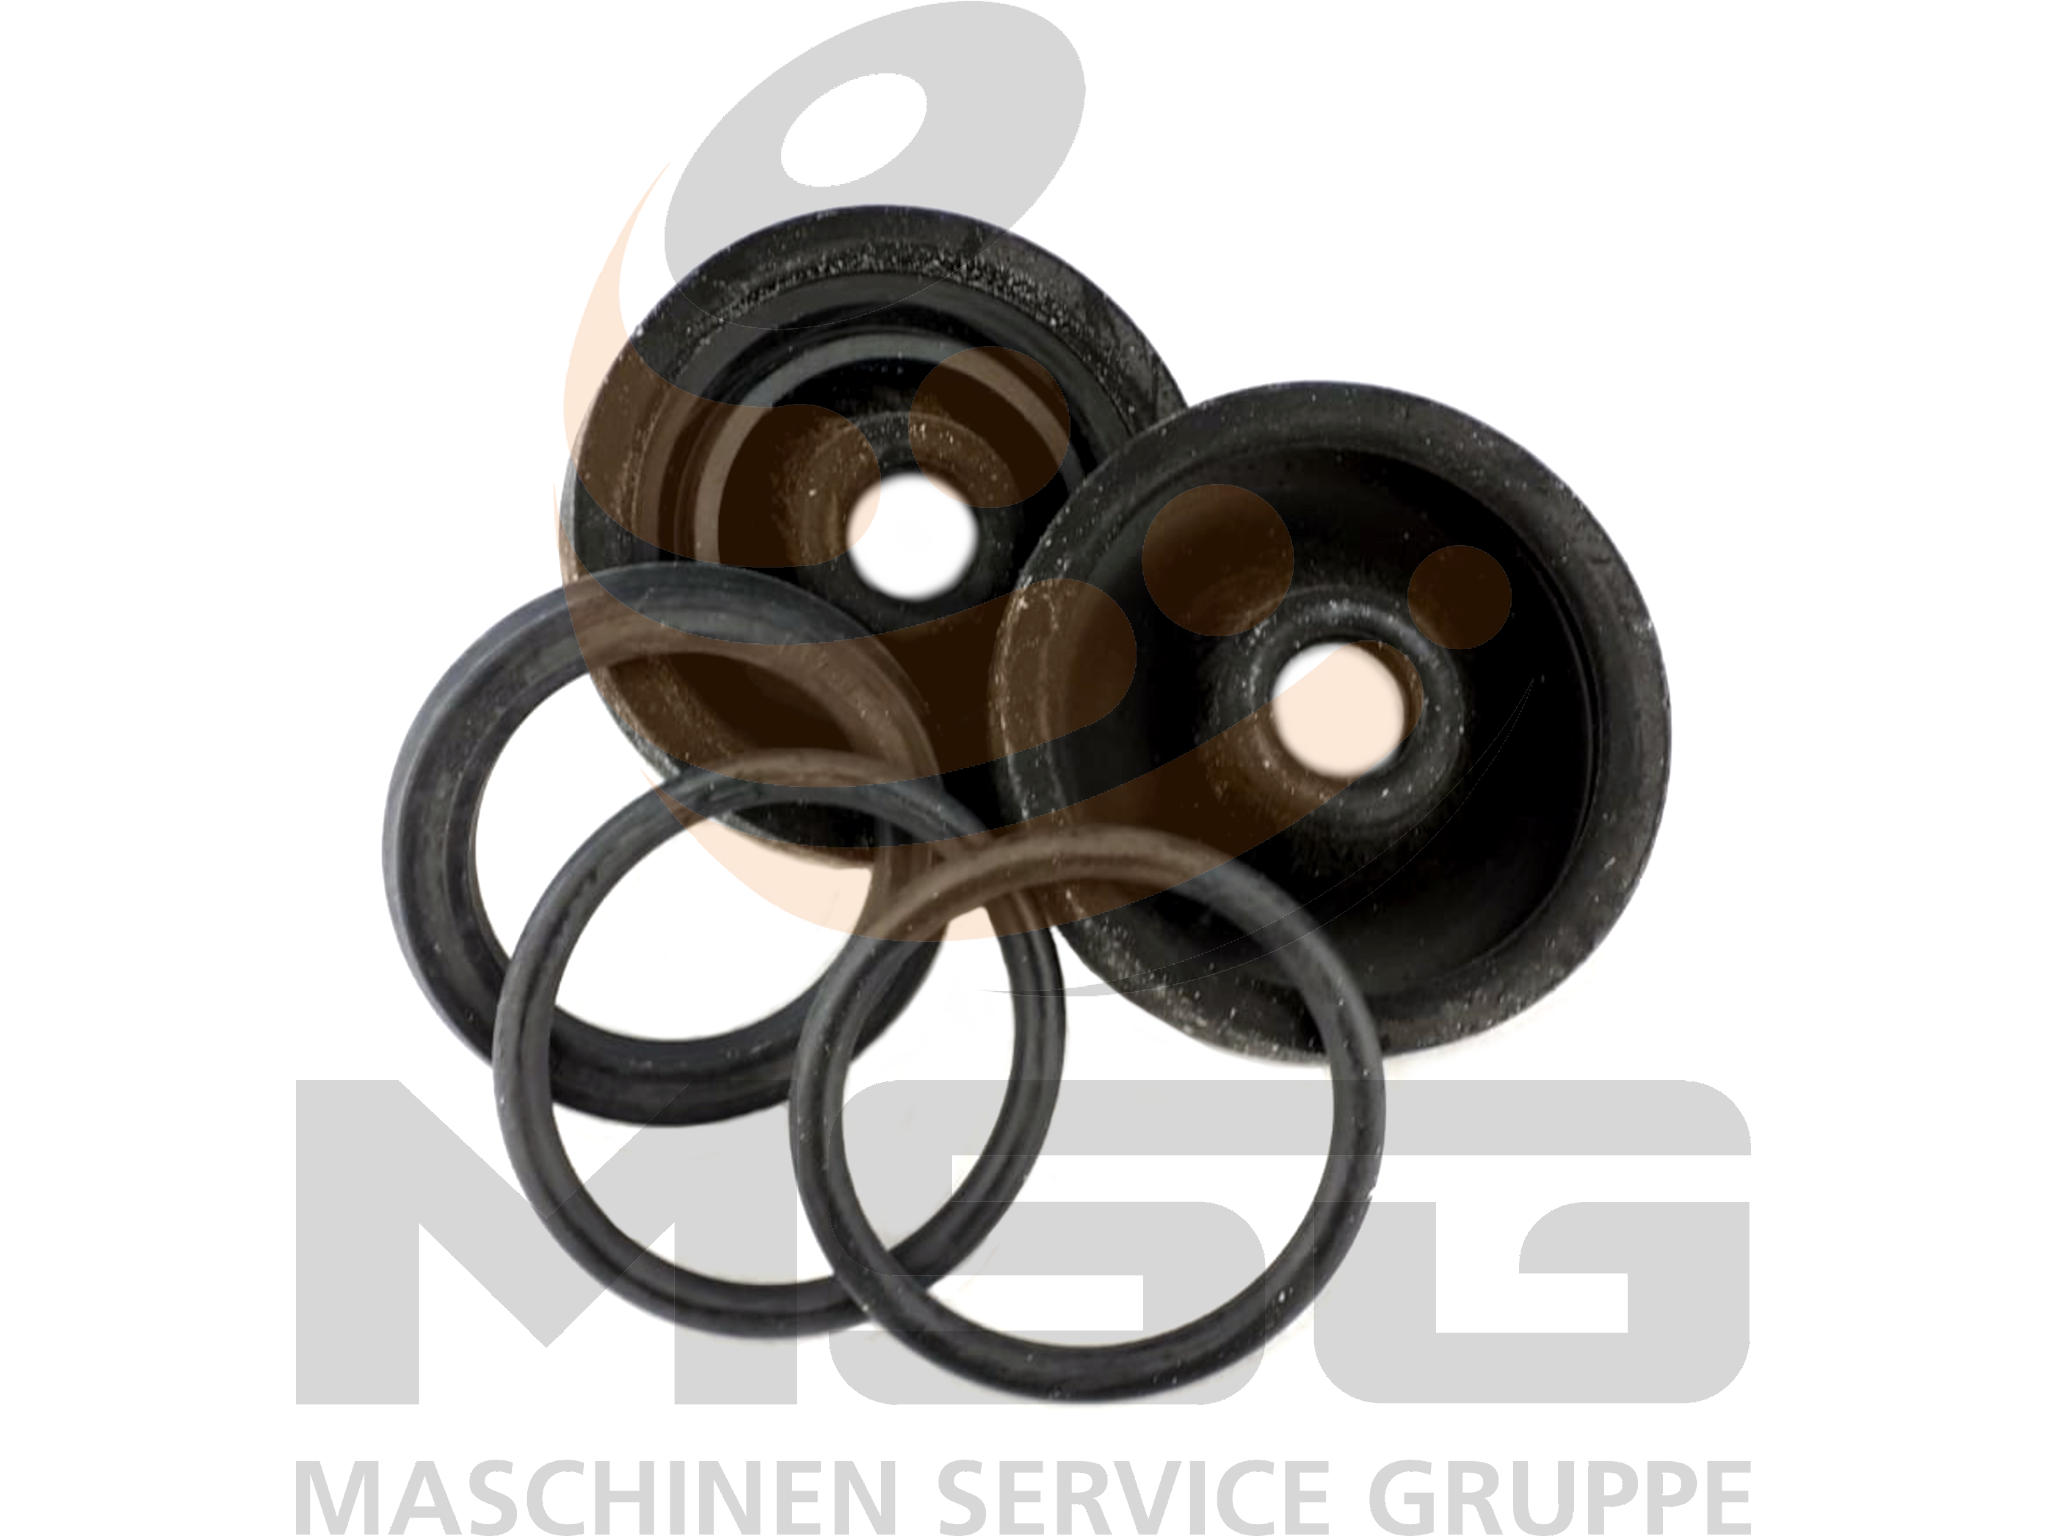 Reparatursatz für Radbremszylinder ohne Kolben 57.15mm z.B. Atlas Bagger, Knott